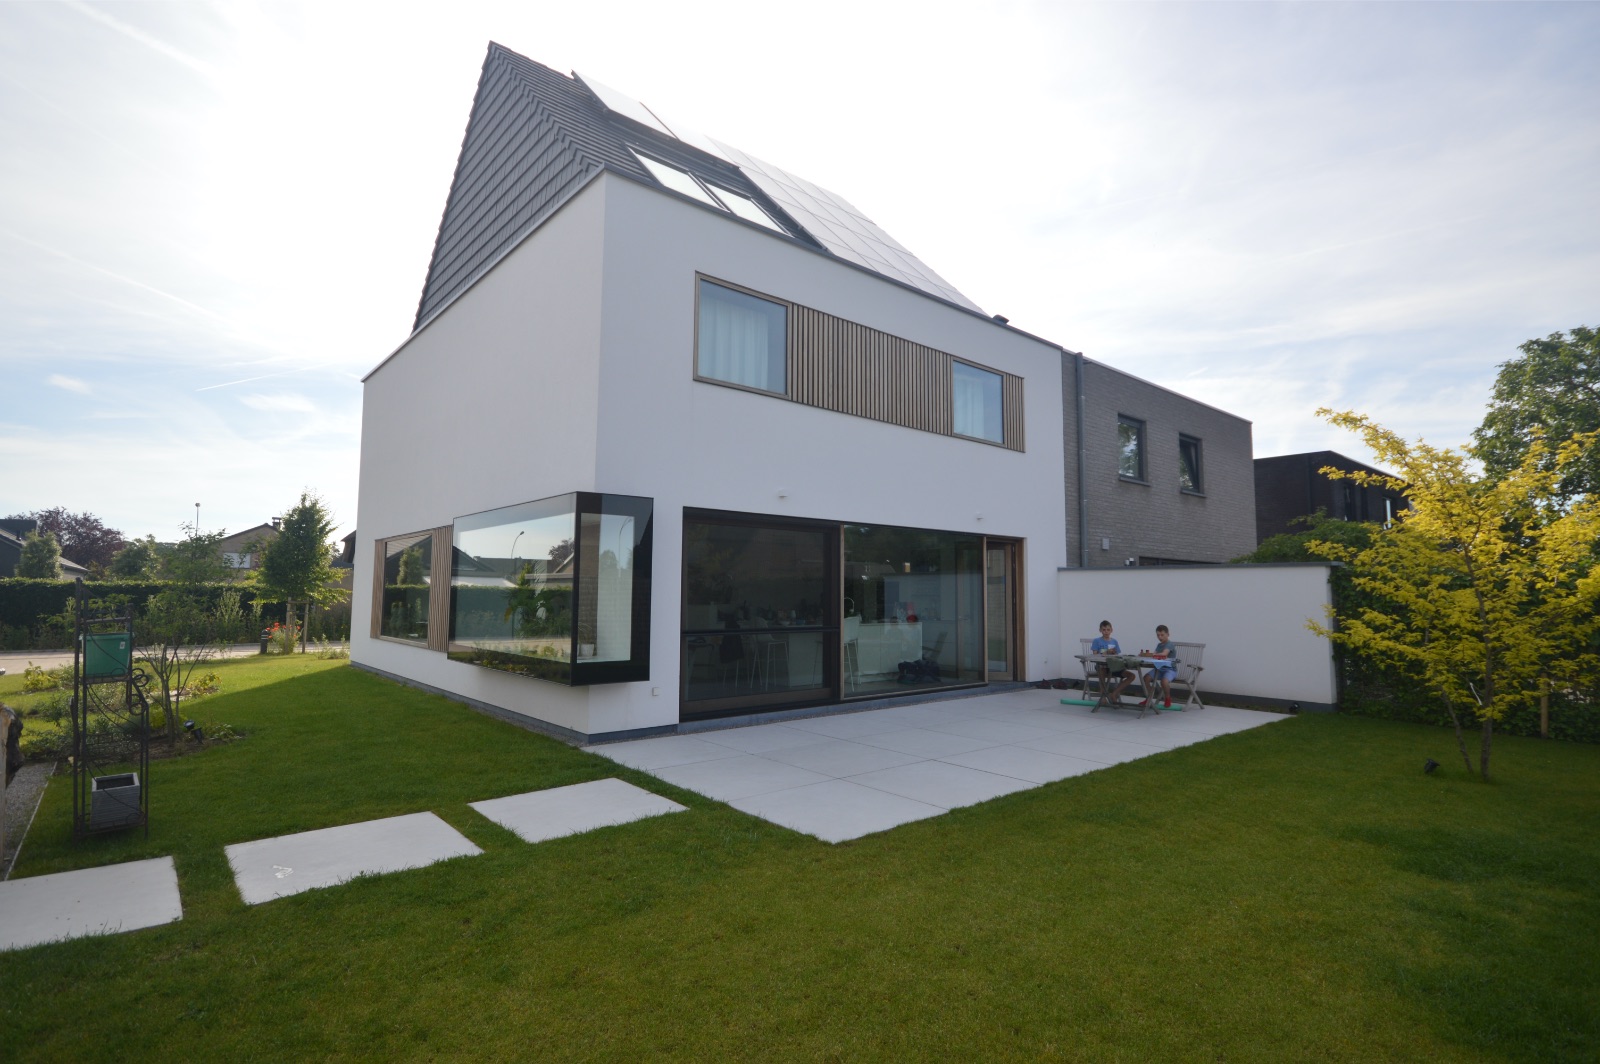 Moderne nieuwbouwwoning in wit met een zwart dak, realisatie van Plan Architectenbureau Brugge